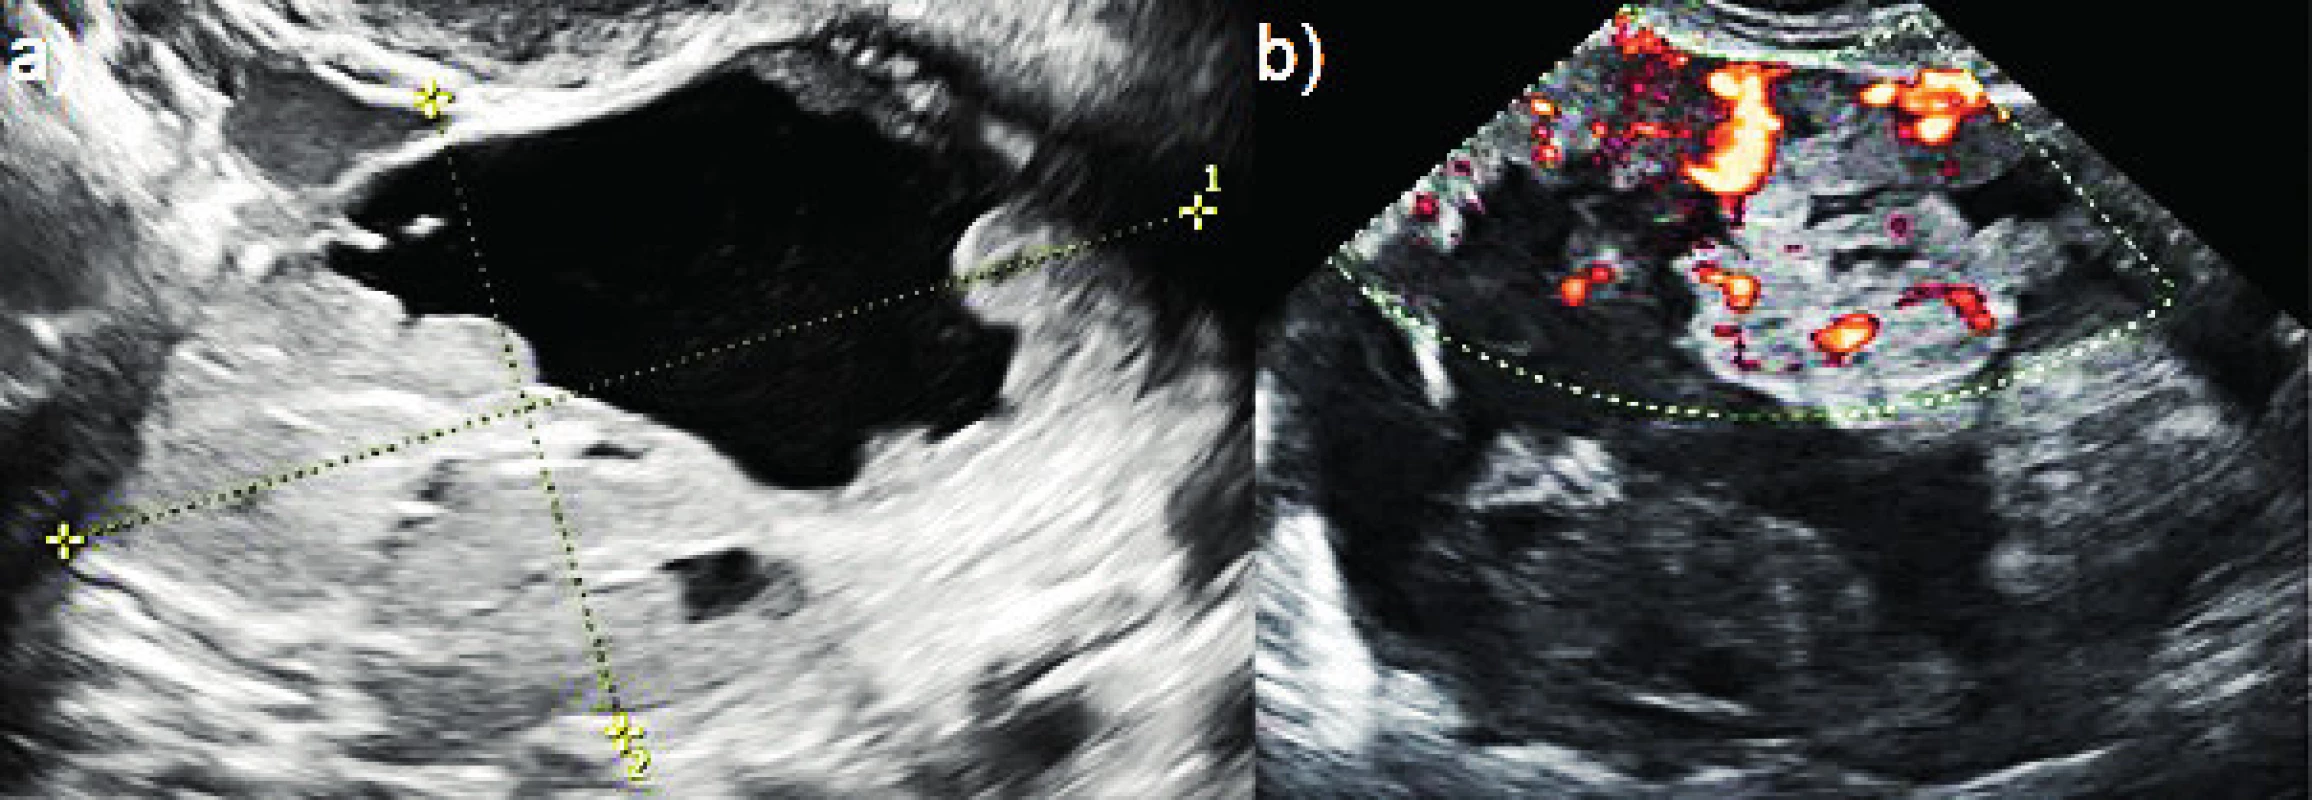 Srovnání benigního a maligního tumoru v terénu
endometriózy<br>
(a) decidualizovaná endometroidní cysta u těhotné ženy (přerušované
čáry); (b) ovariální endometroidní adenokarcinom vzniklý maligní
transformací endometroidní cysty u perimenopauzální pacientky.